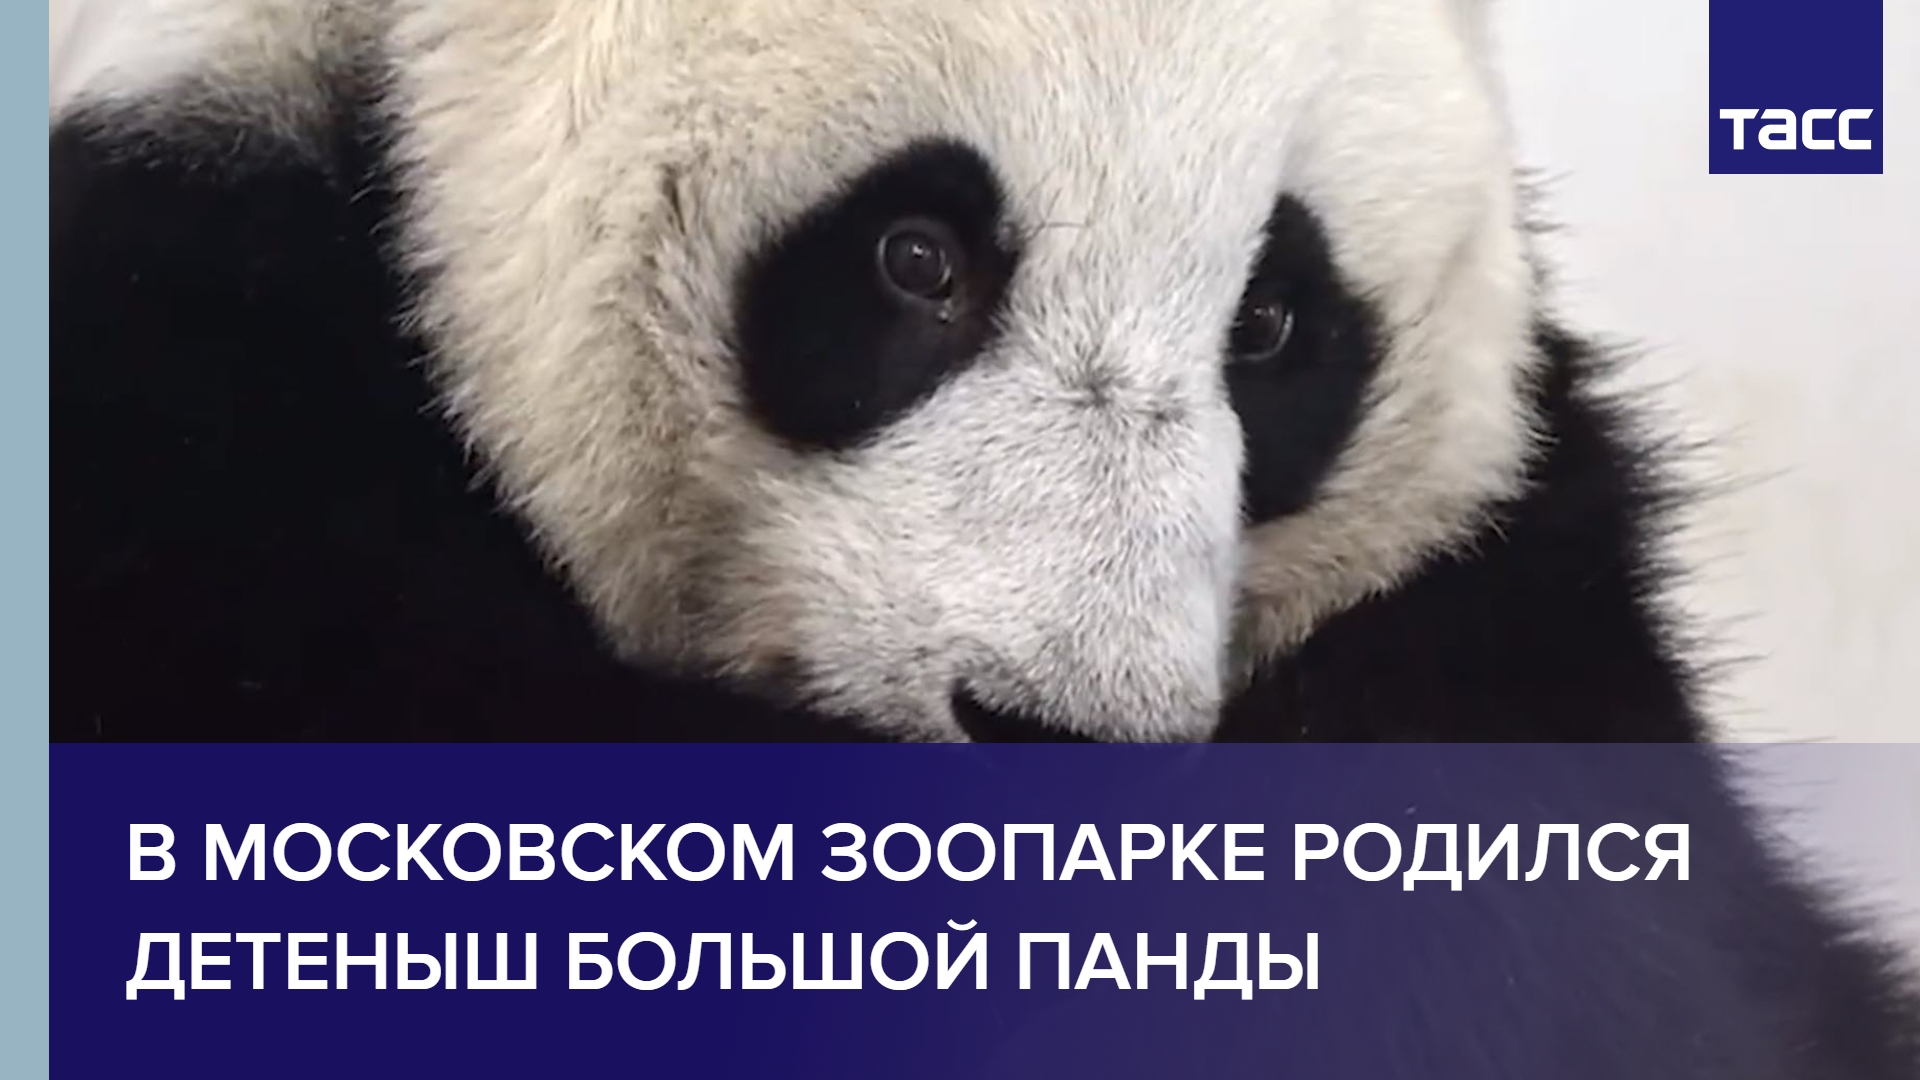 Панда детеныш москва. Детёныш панды в Московском зоопарке. В Московском зоопарке родился детеныш панды. В Московском зоопарке родилась Панда. Увидеть детеныша панды в Московском зоопарке.